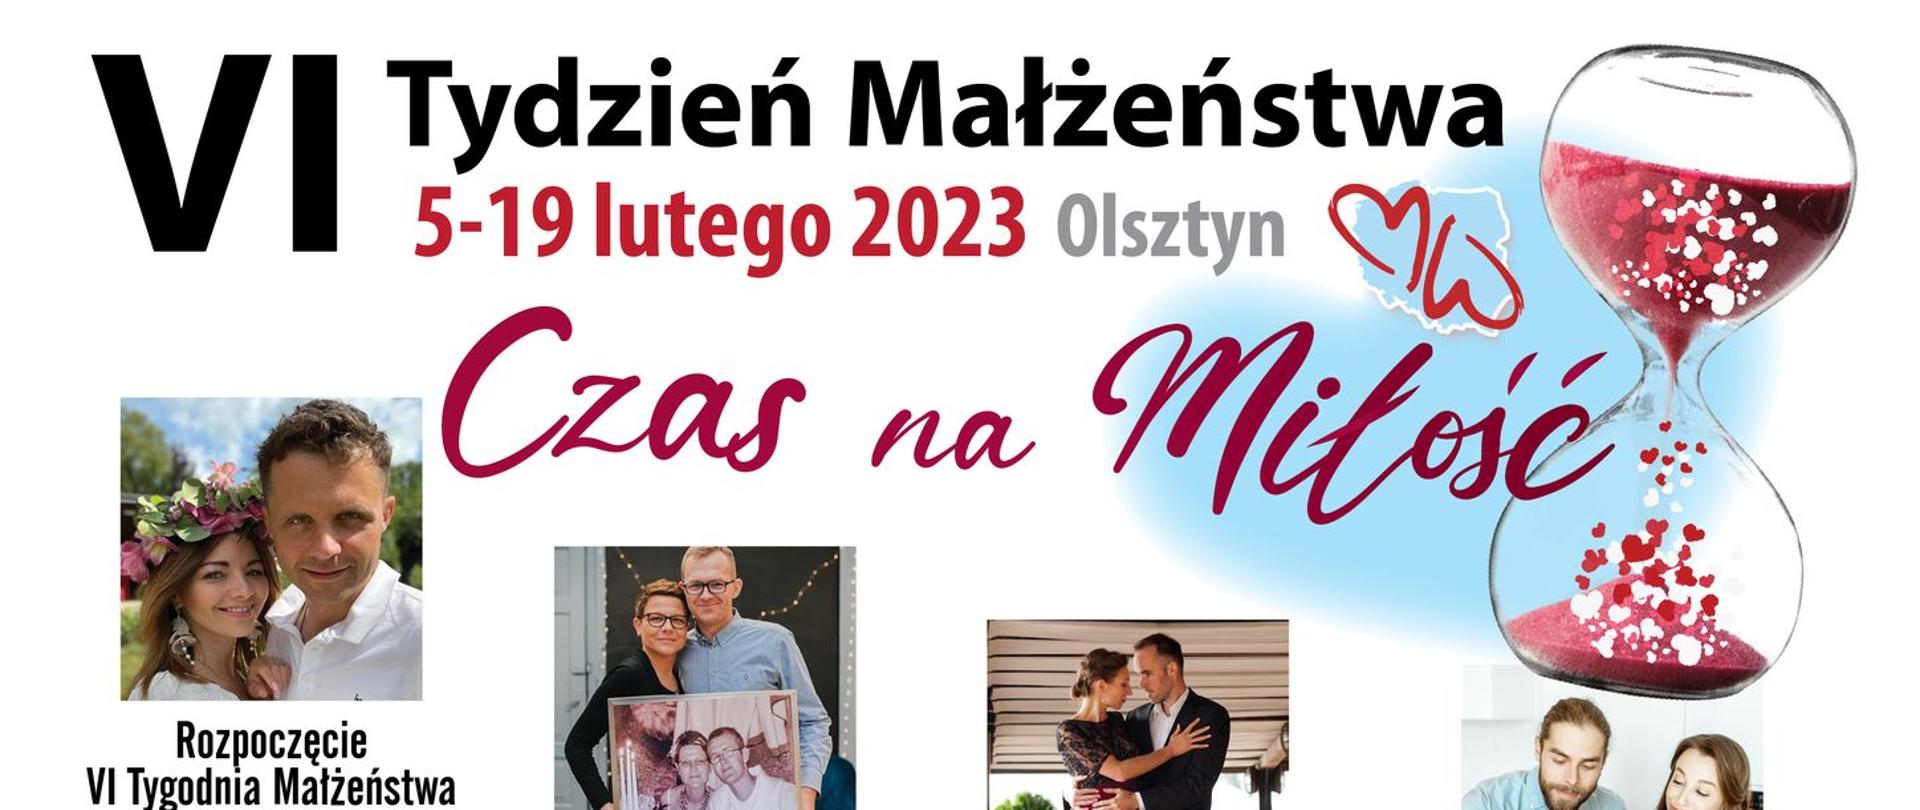 VI Tydzień Małżeństwa w Olsztynie